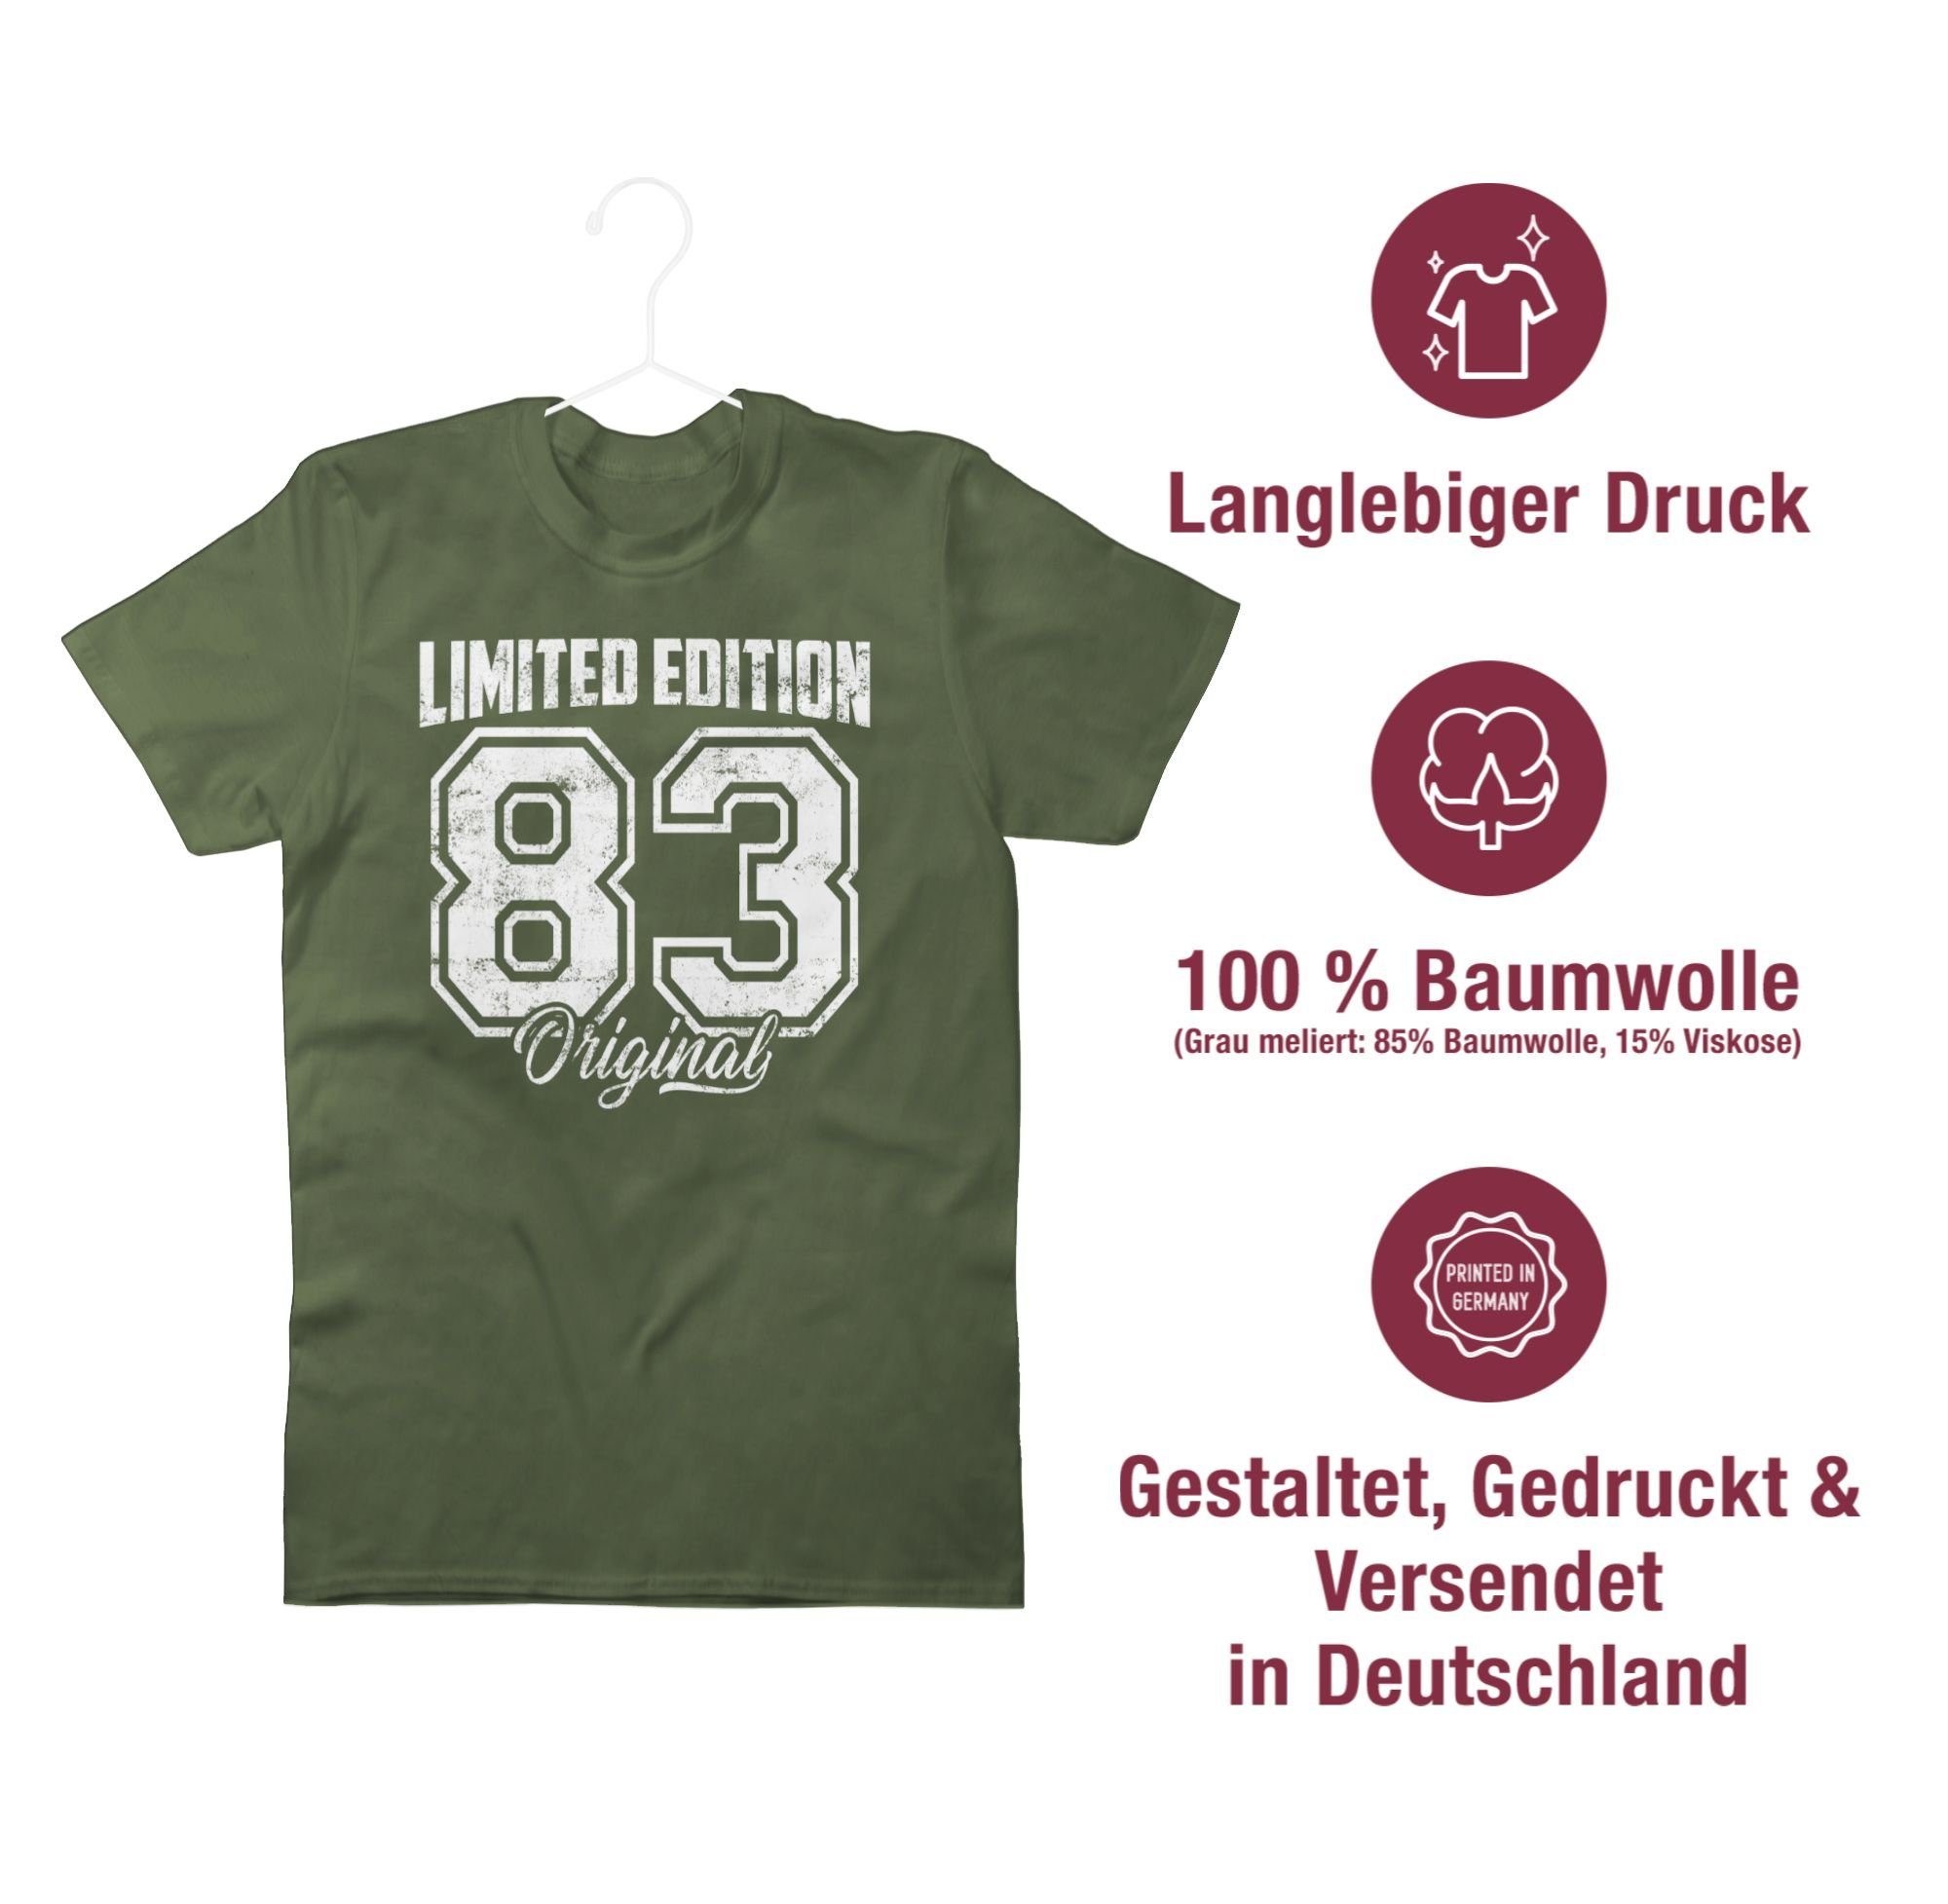 Original Edition T-Shirt Limited Grün Weiß Shirtracer 03 1983 Army Vierzigster Geburtstag 40. Vintage